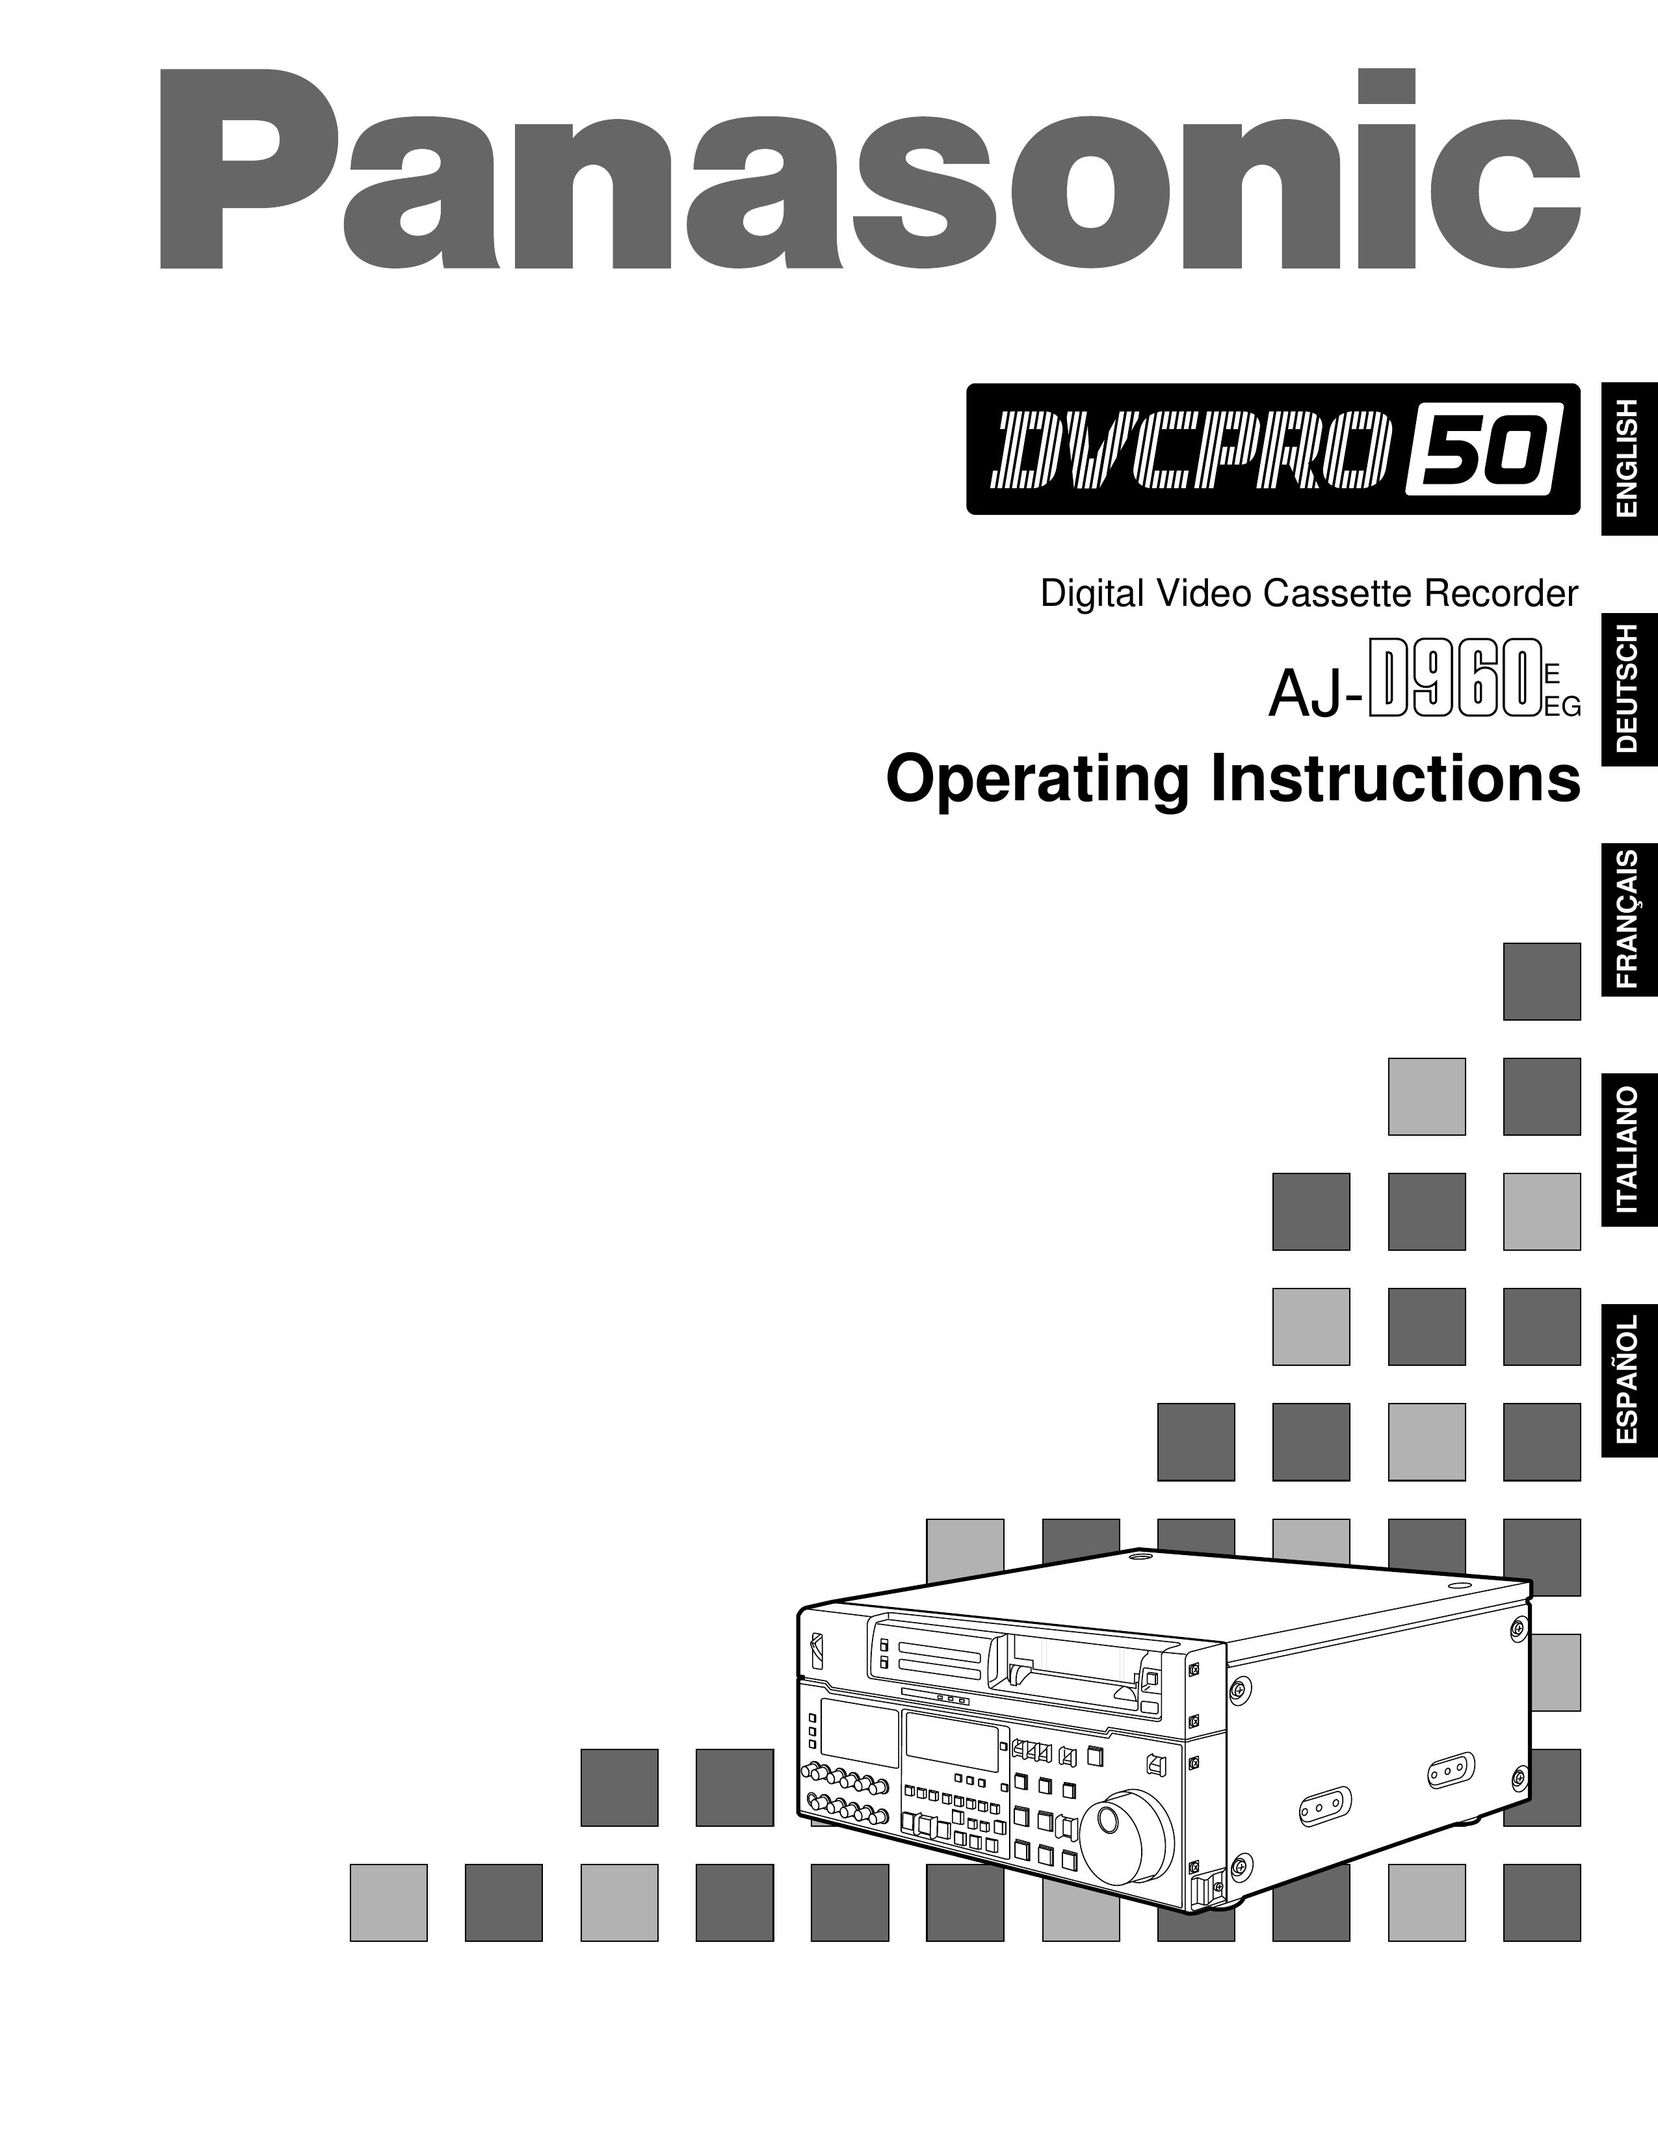 Panasonic AJ-D960EG VCR User Manual